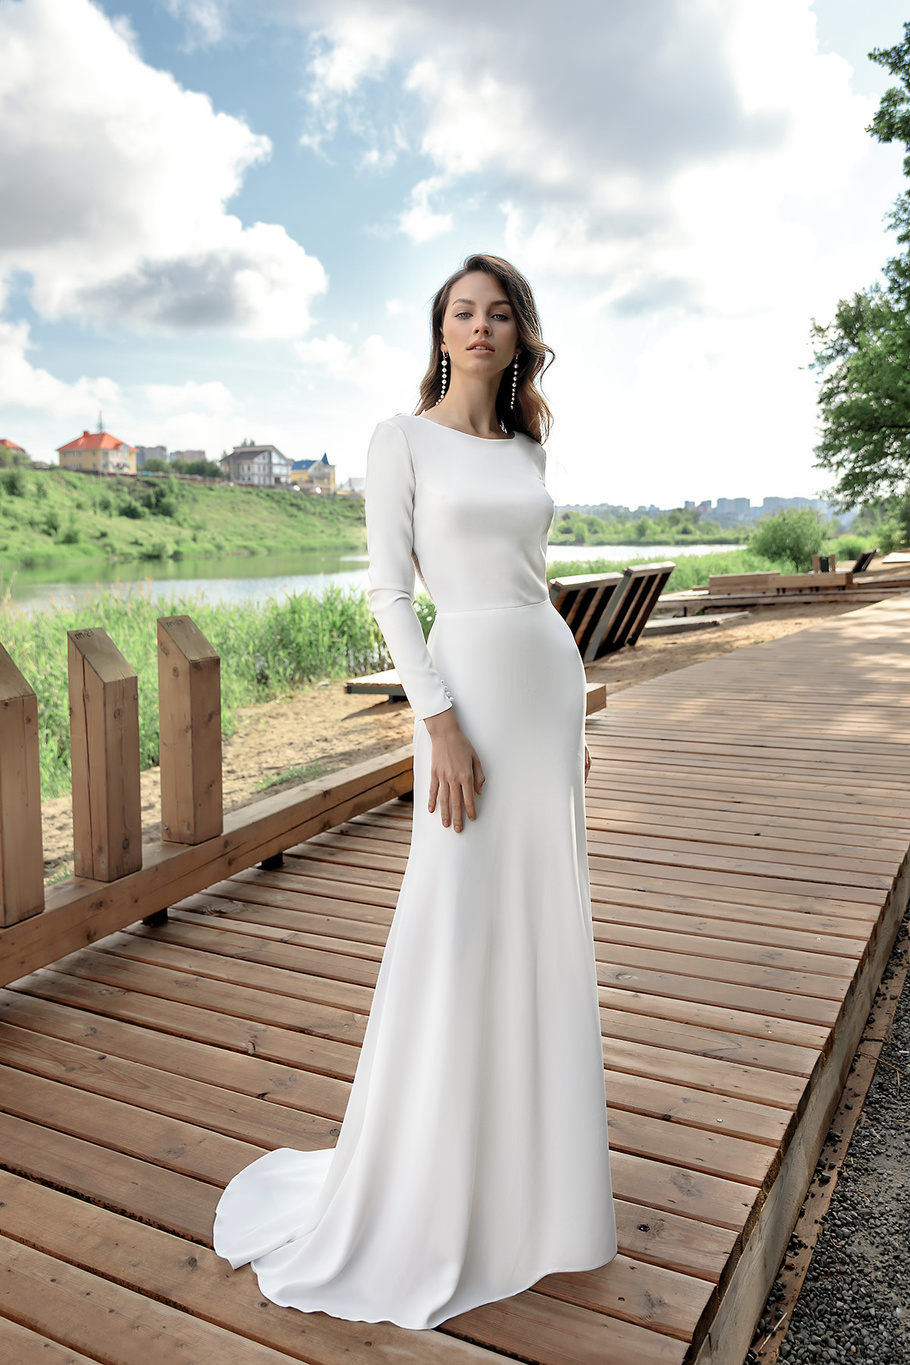 Купить свадебное платье «Эммануэль» Ателье Лейс Дизайн из коллекции 2021 года в салоне «Мэри Трюфель»